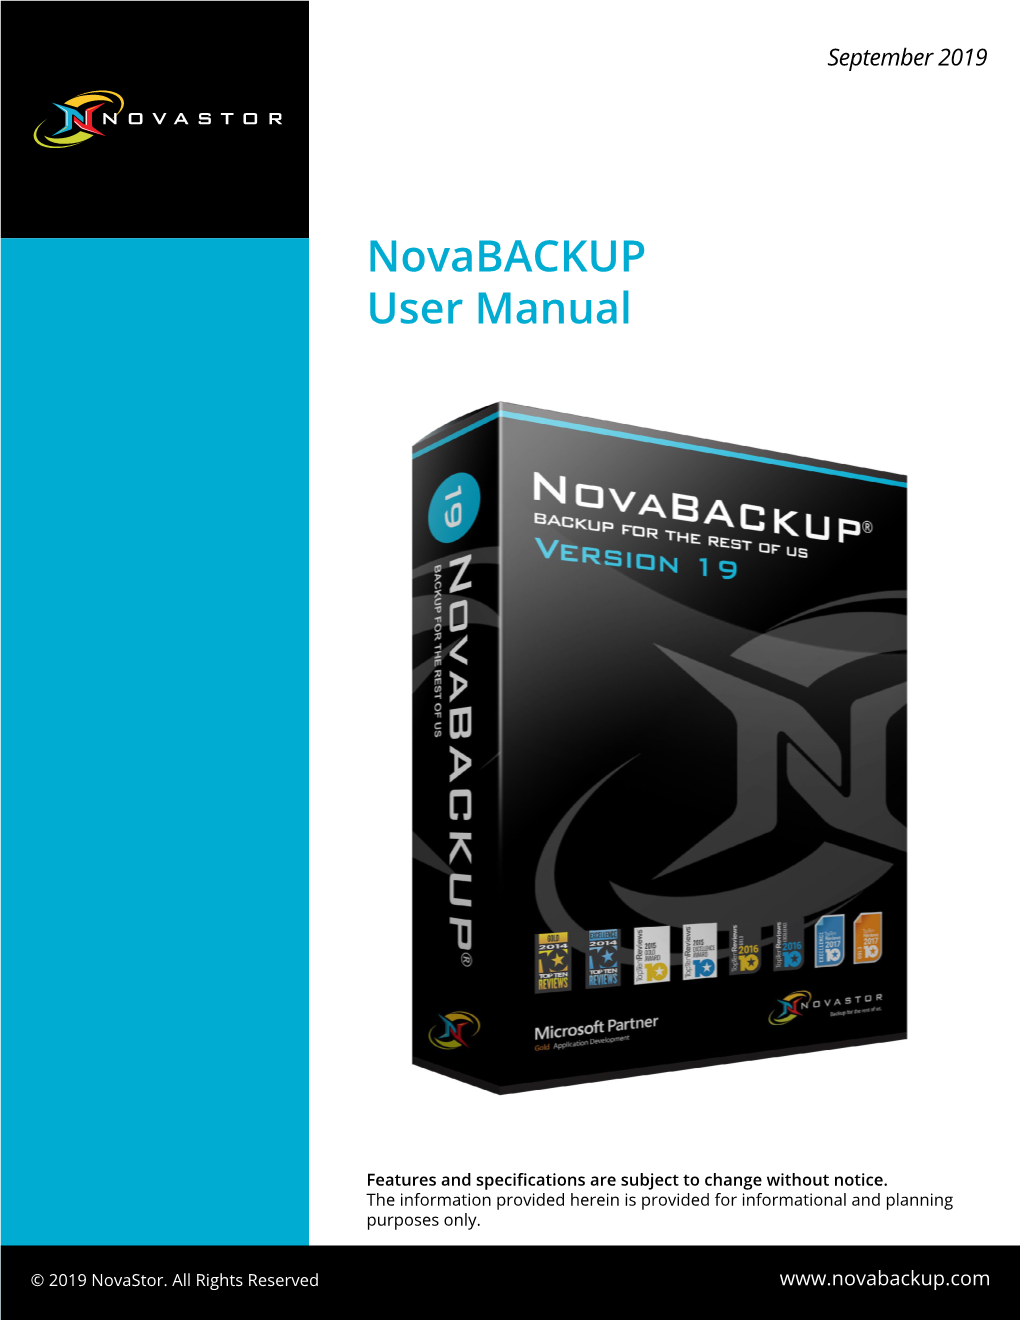 Novabackup 19.4 User Manual